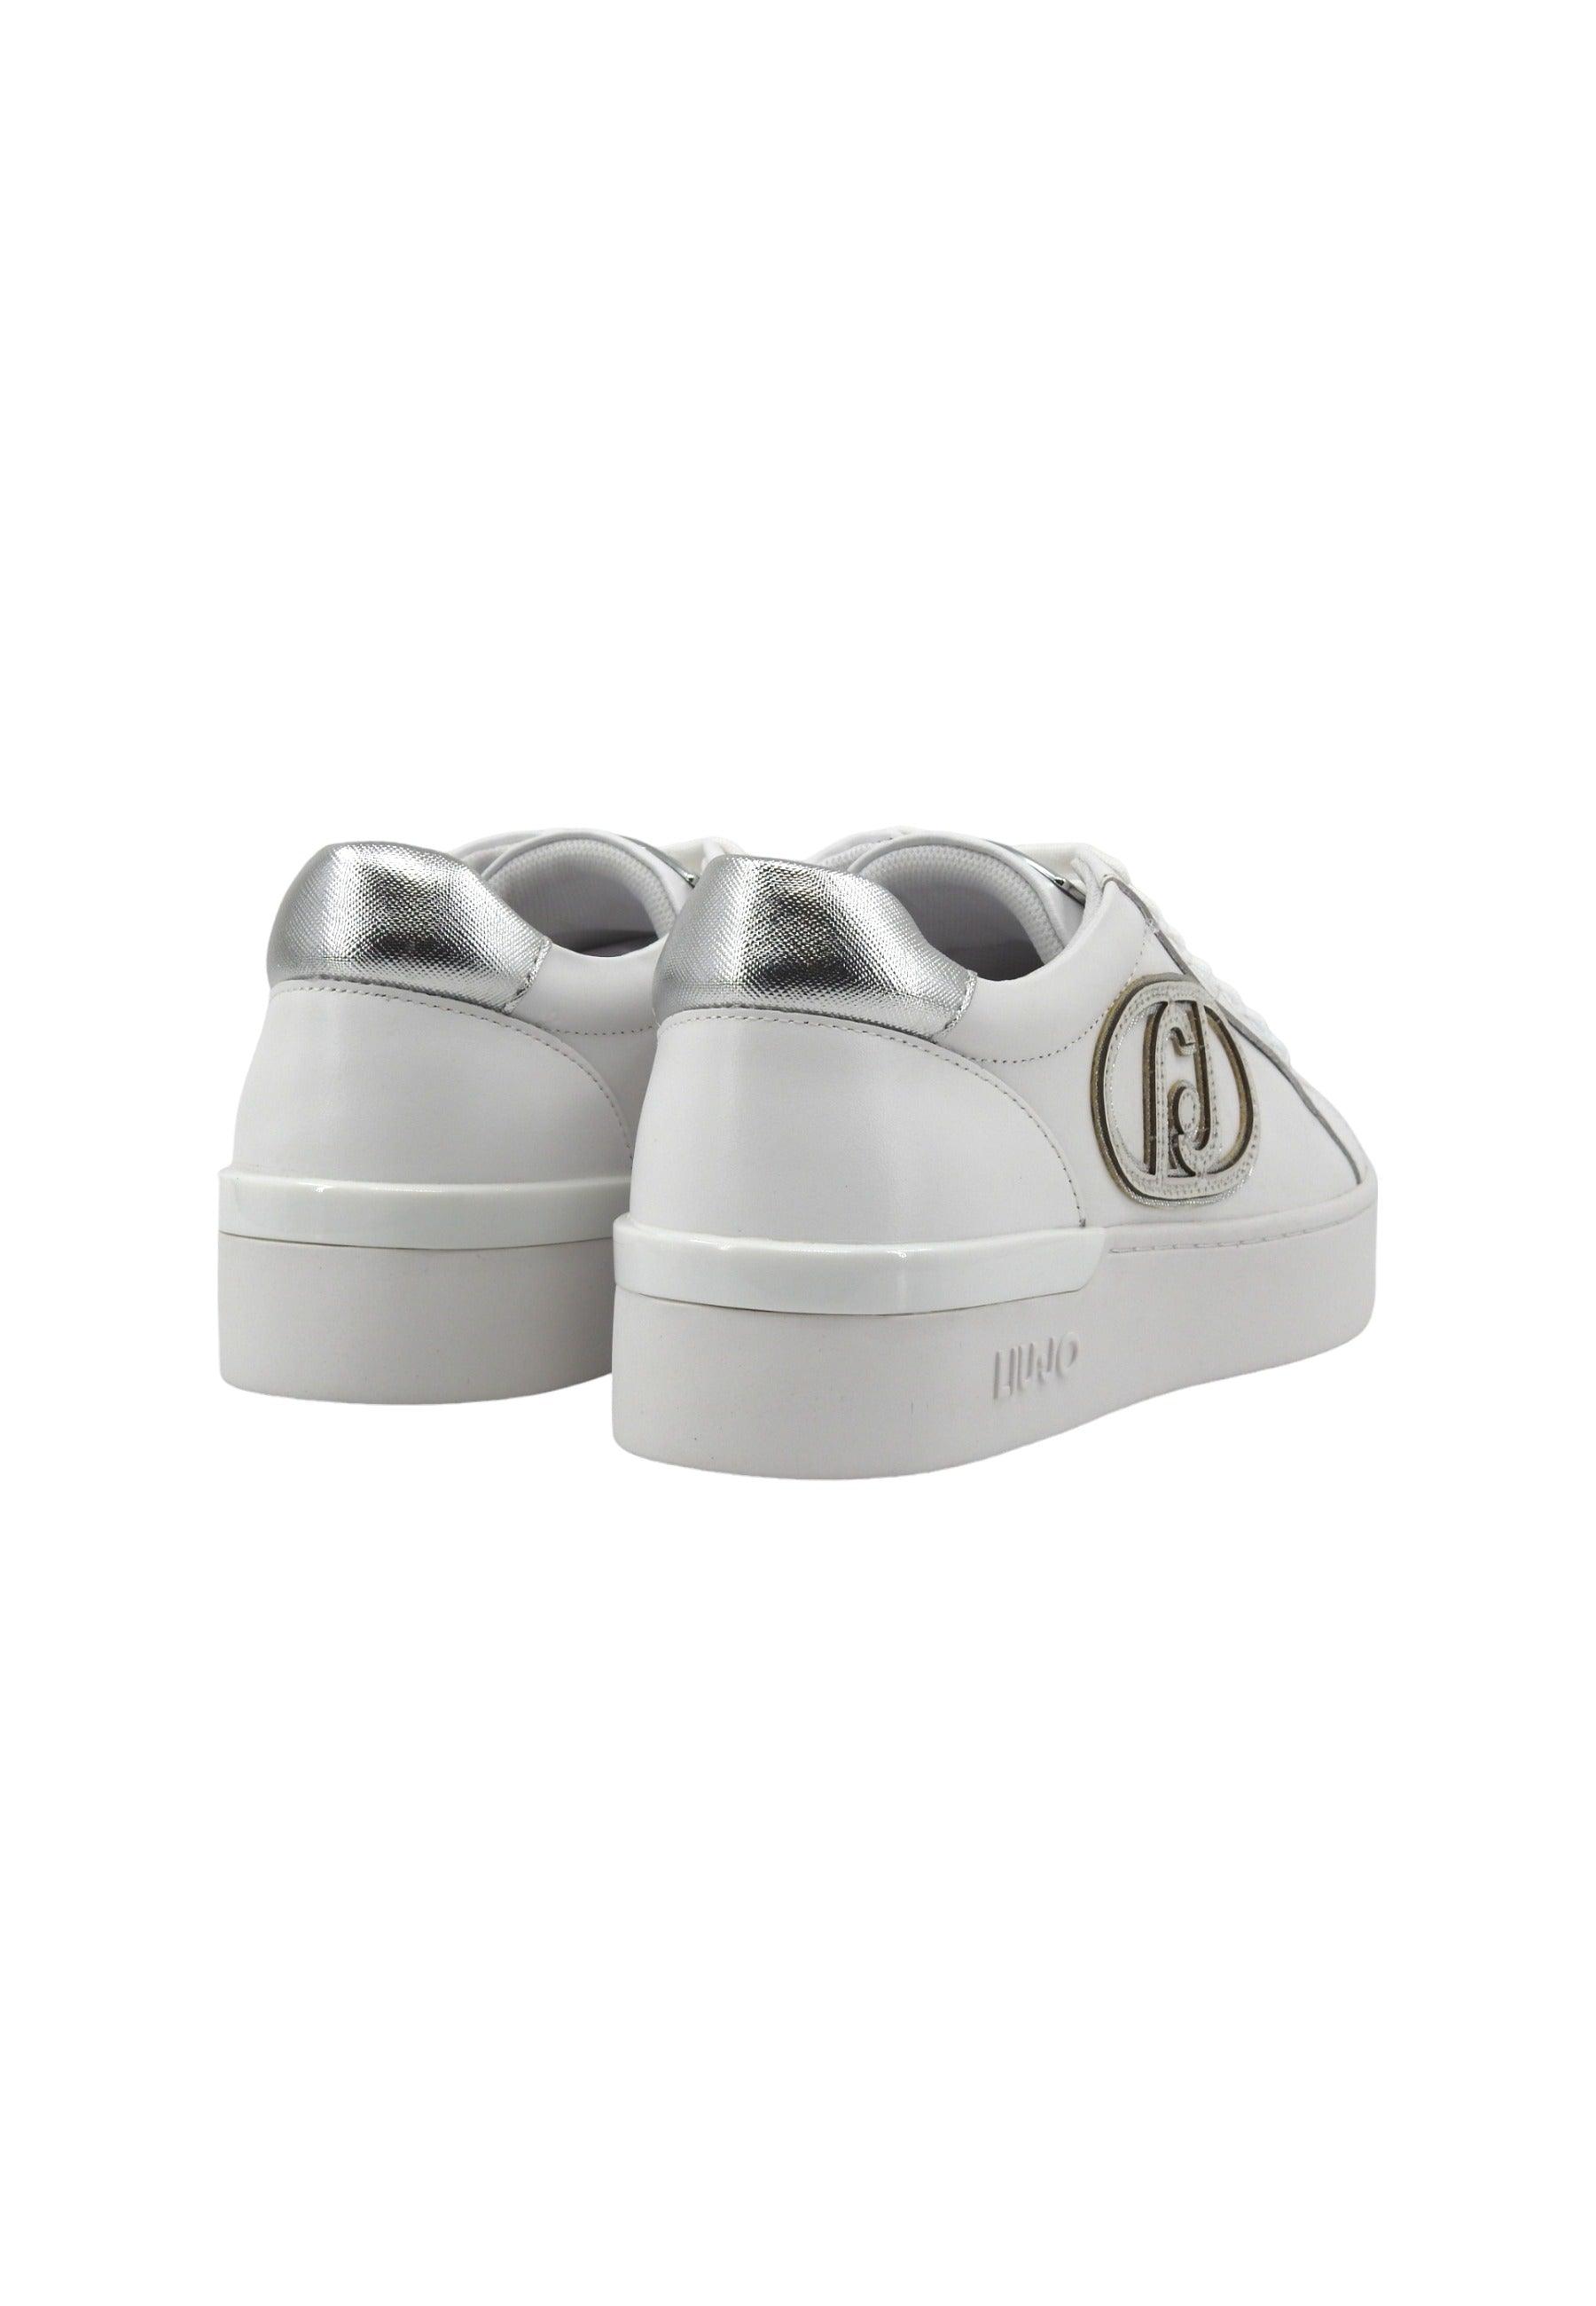 LIU JO Silvia 93 Sneaker Donna White BA4041PX026 - Sandrini Calzature e Abbigliamento